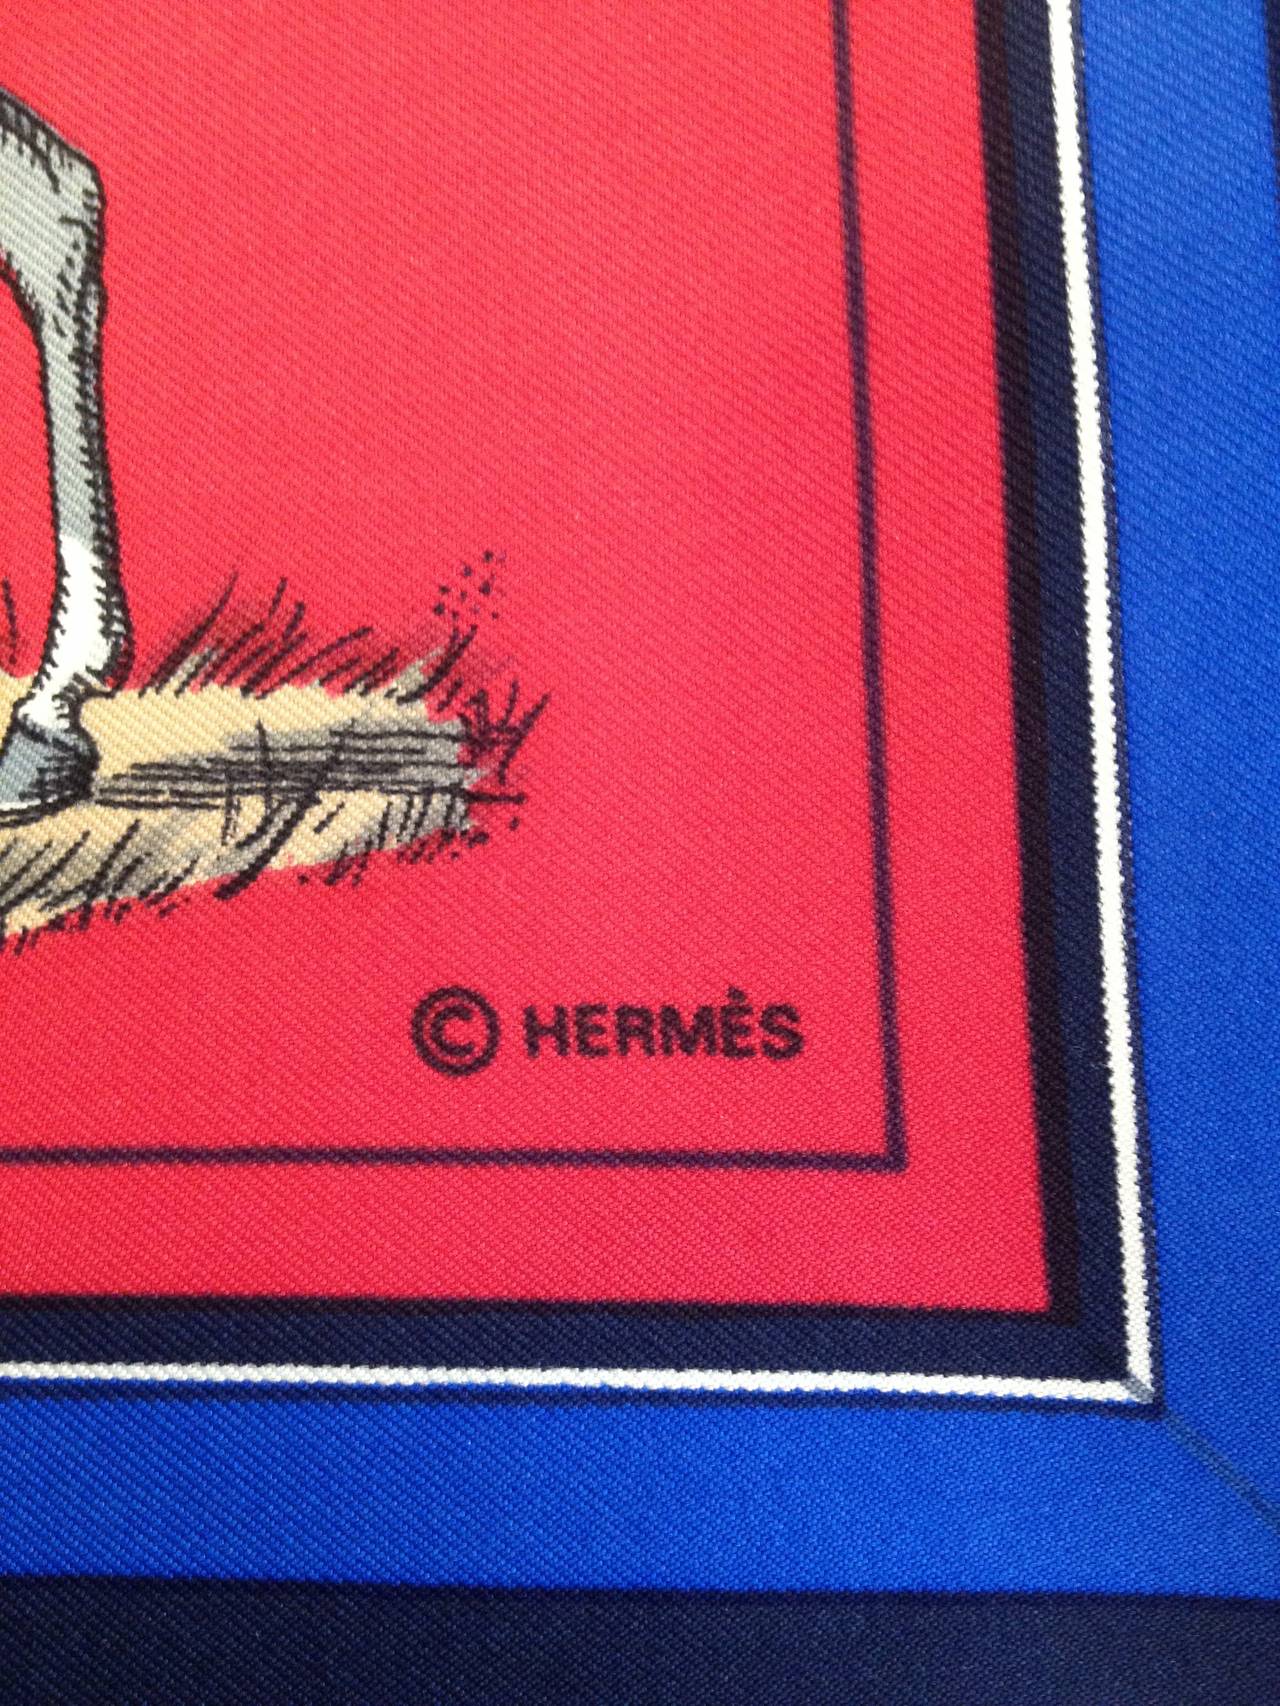 Women's Hermes Couvertures et Tenues de Jour Scarf